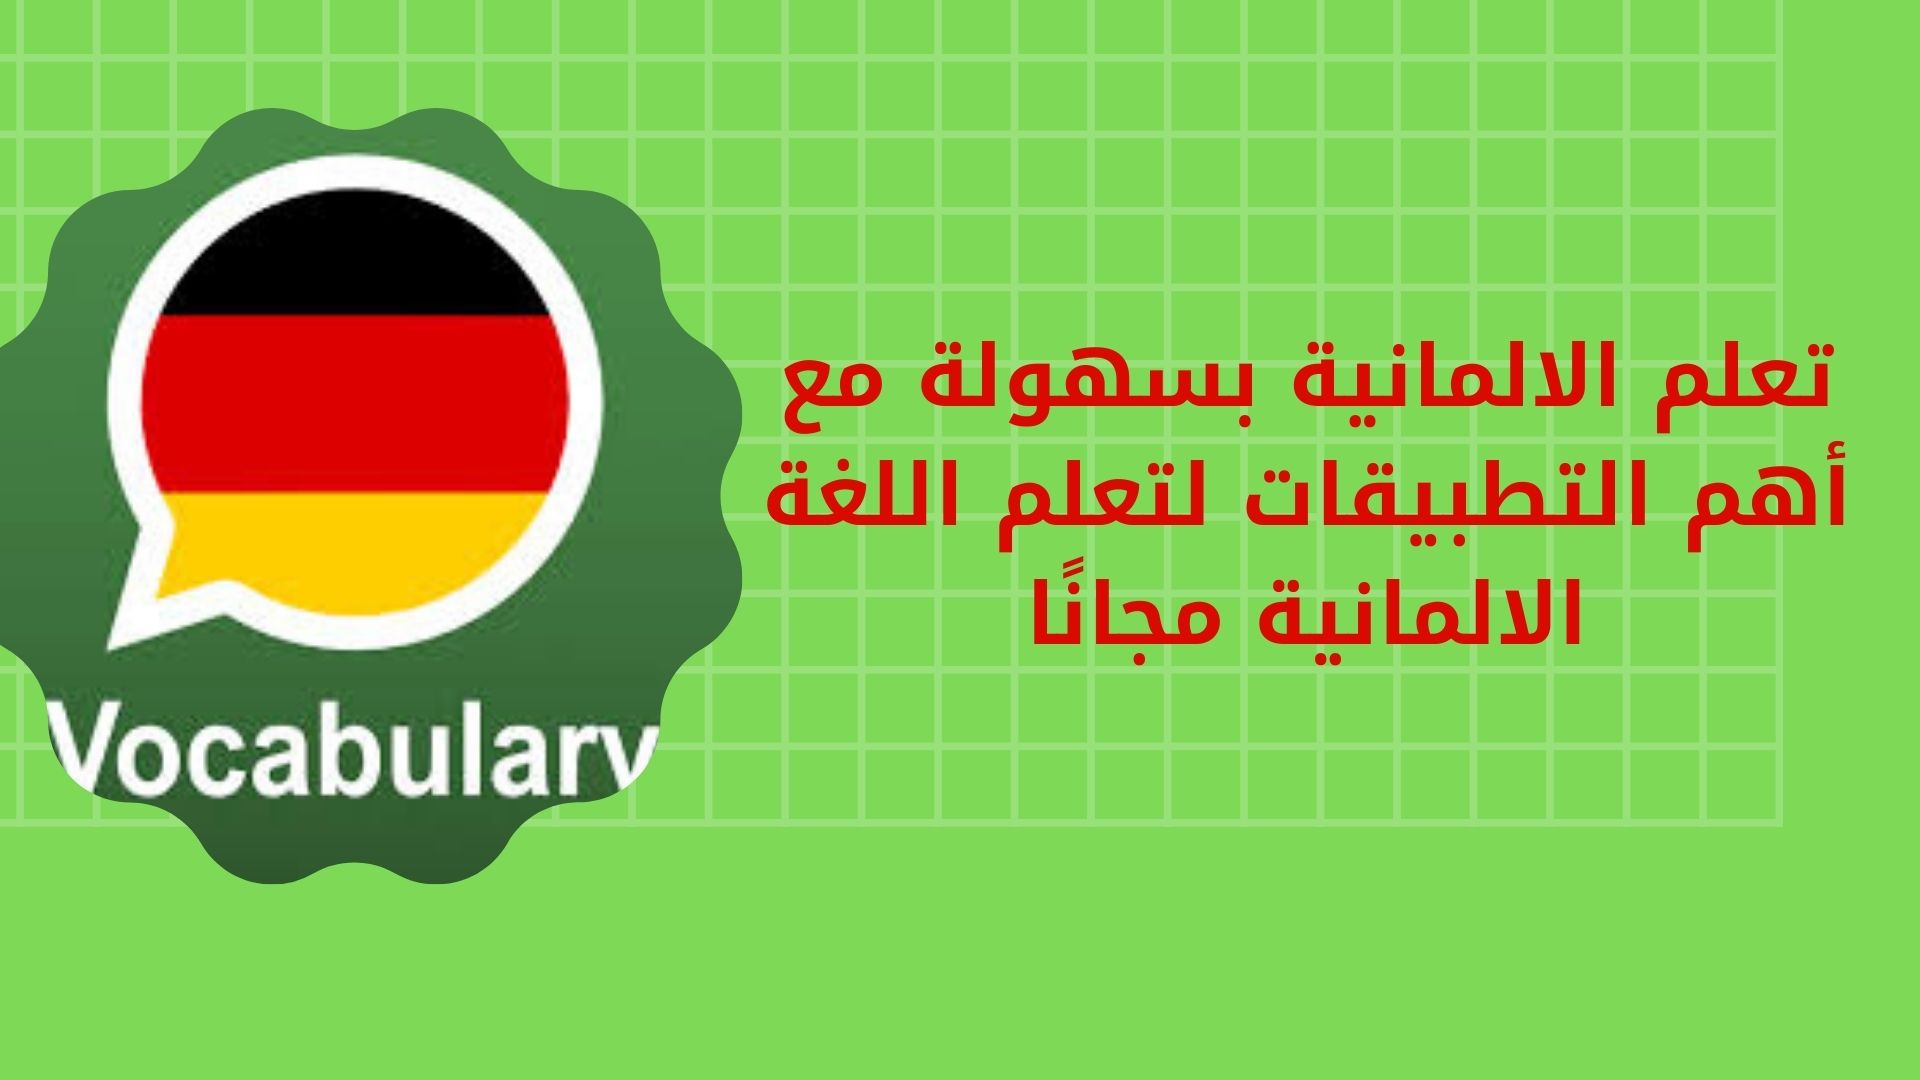 تعلم الالمانية بسهولة مع أهم التطبيقات لتعلم اللغة الالمانية مجانًا